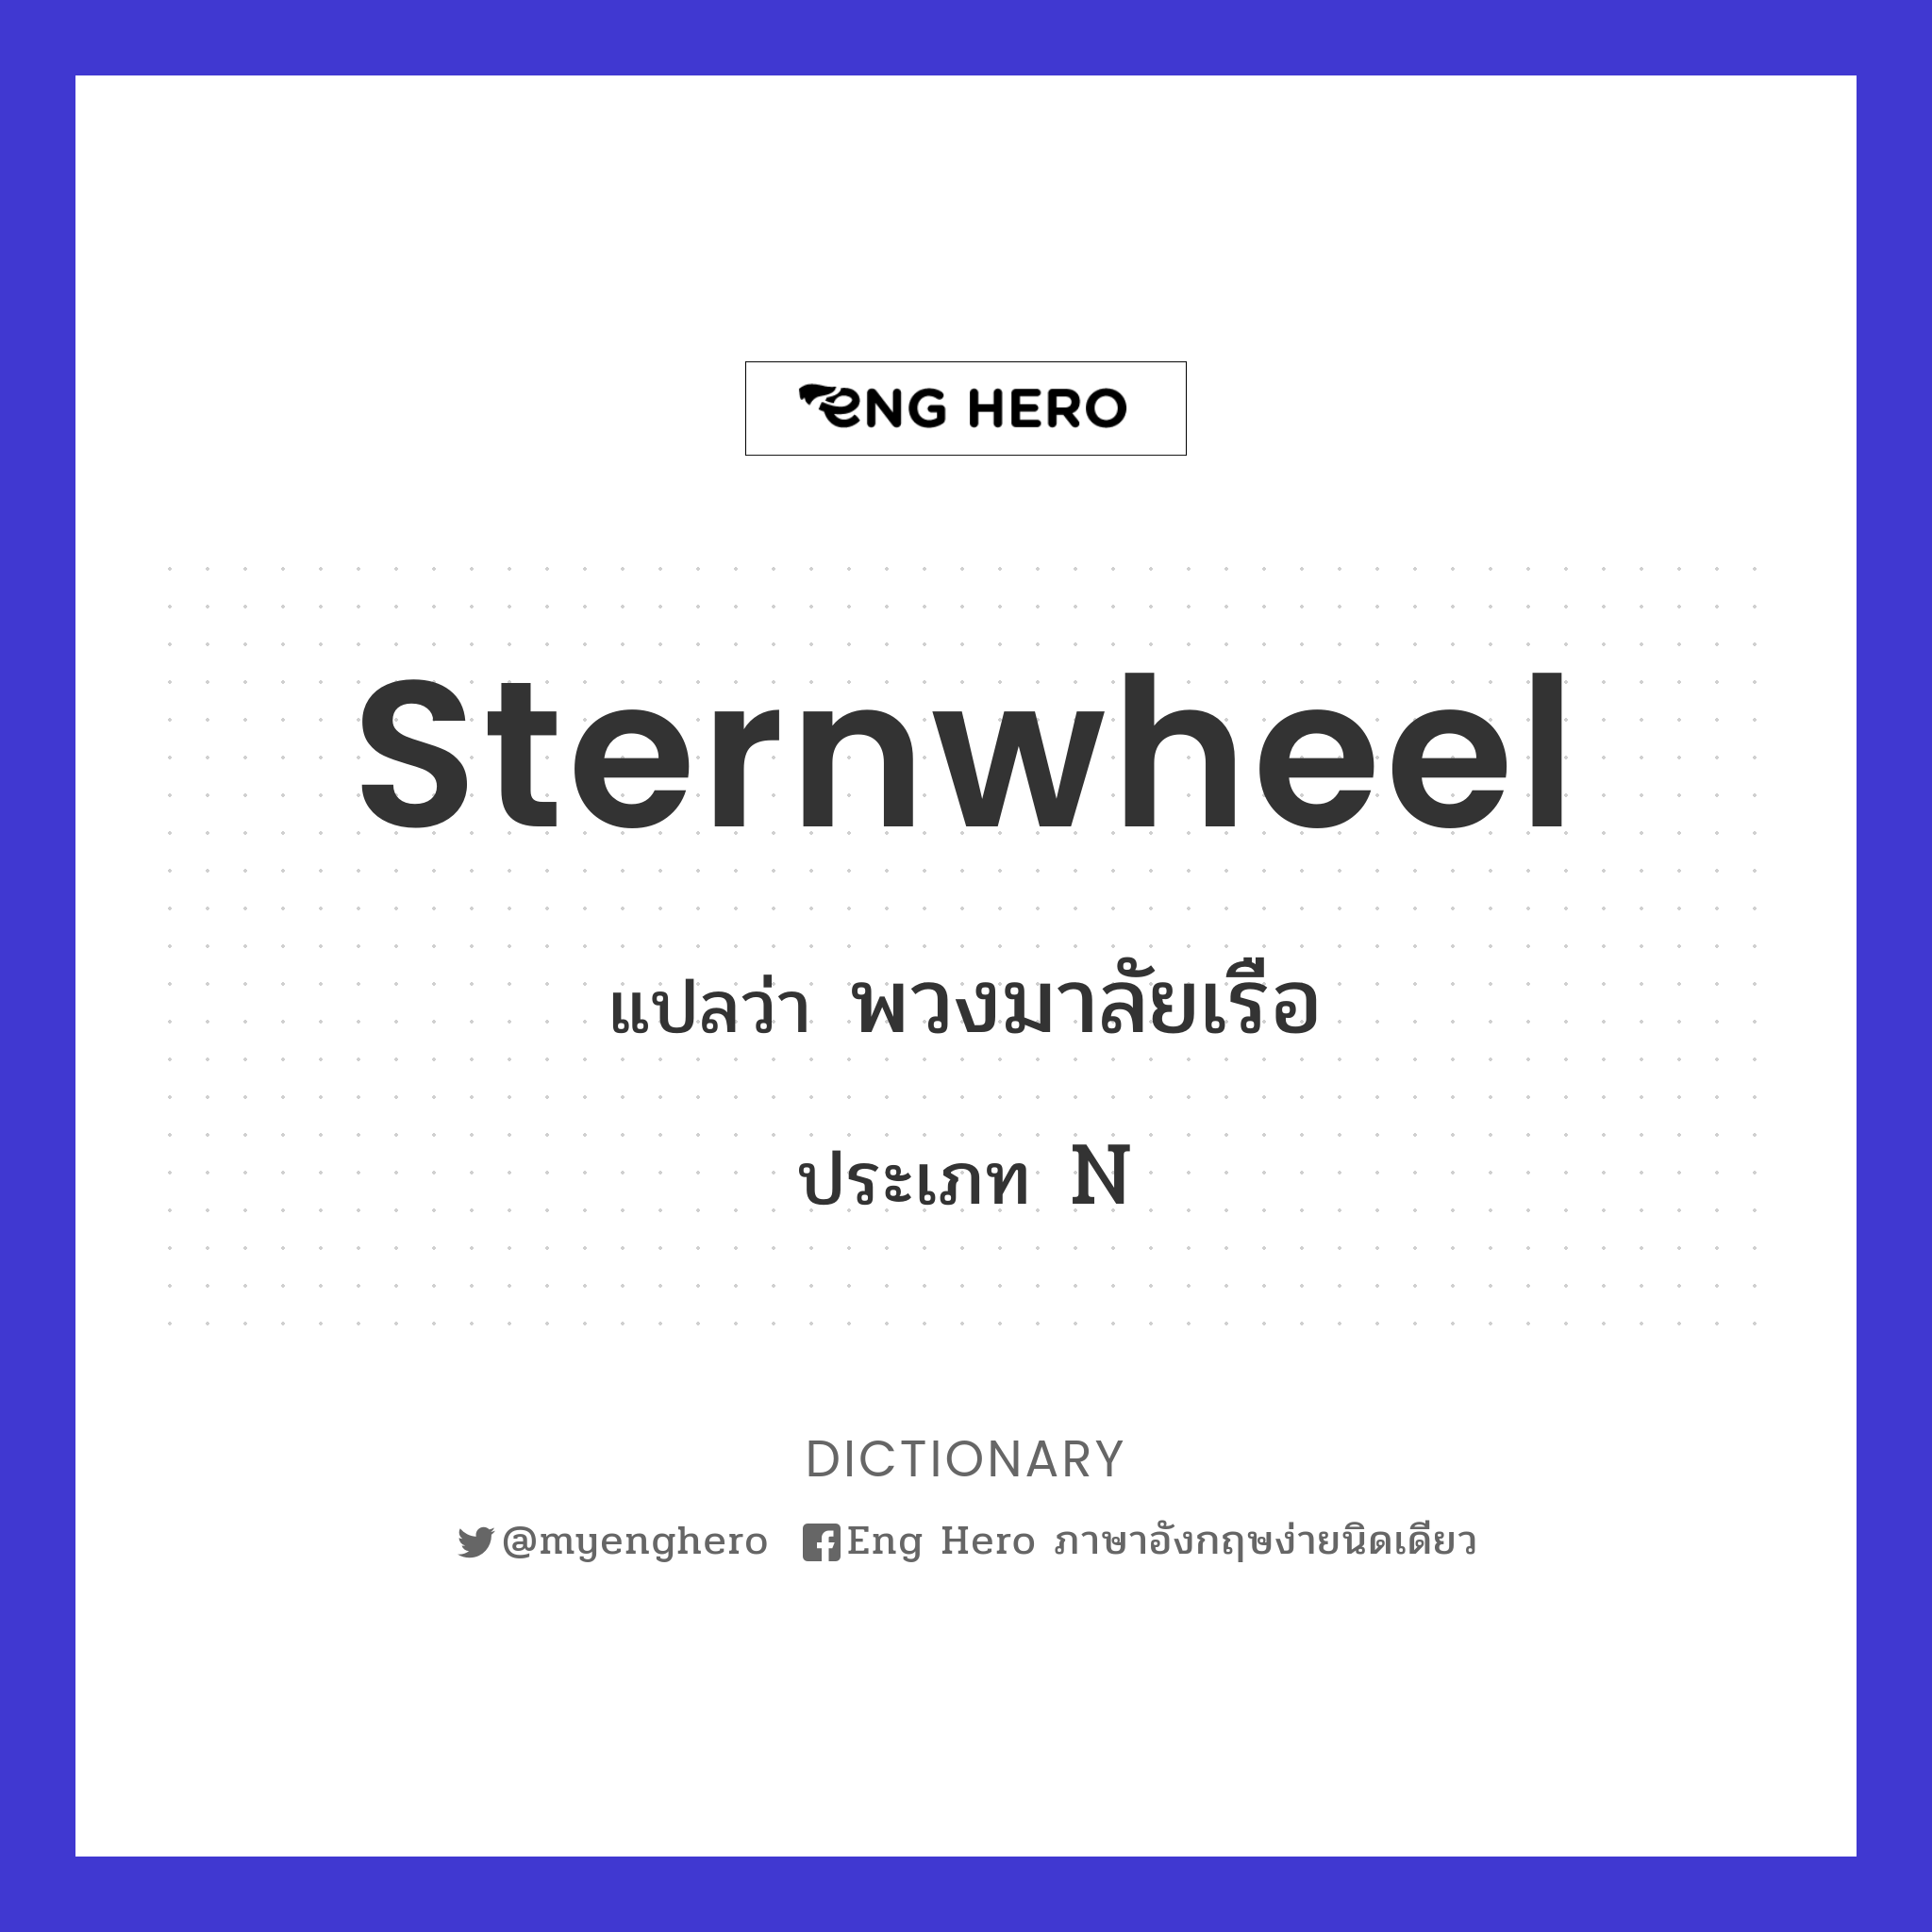 sternwheel